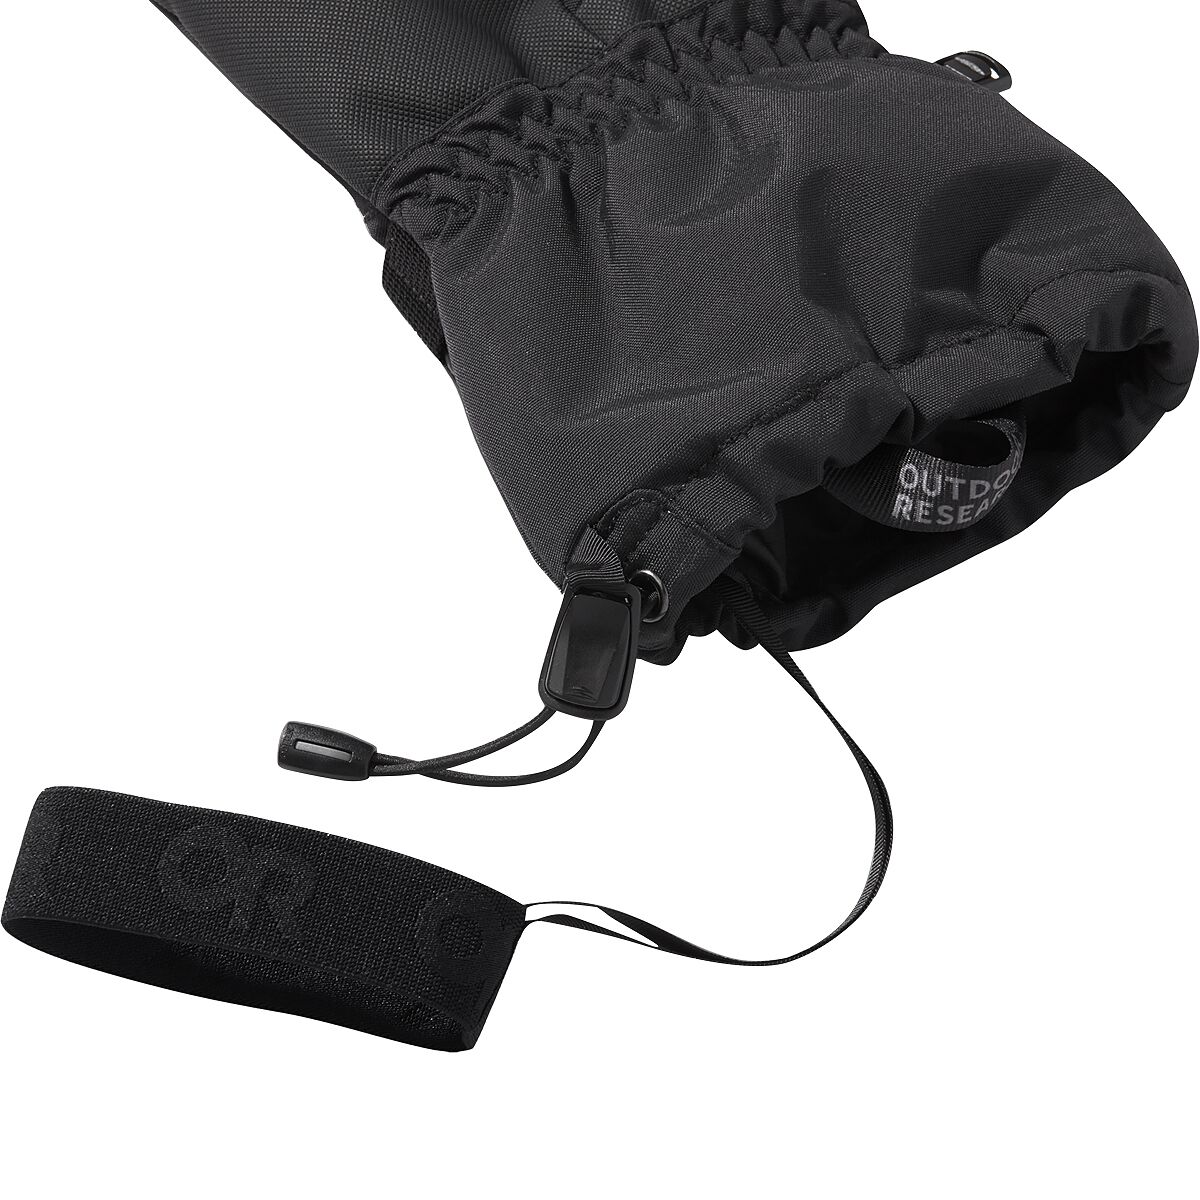 Outdoor Research Adrenaline Glove - Men's - Accessories